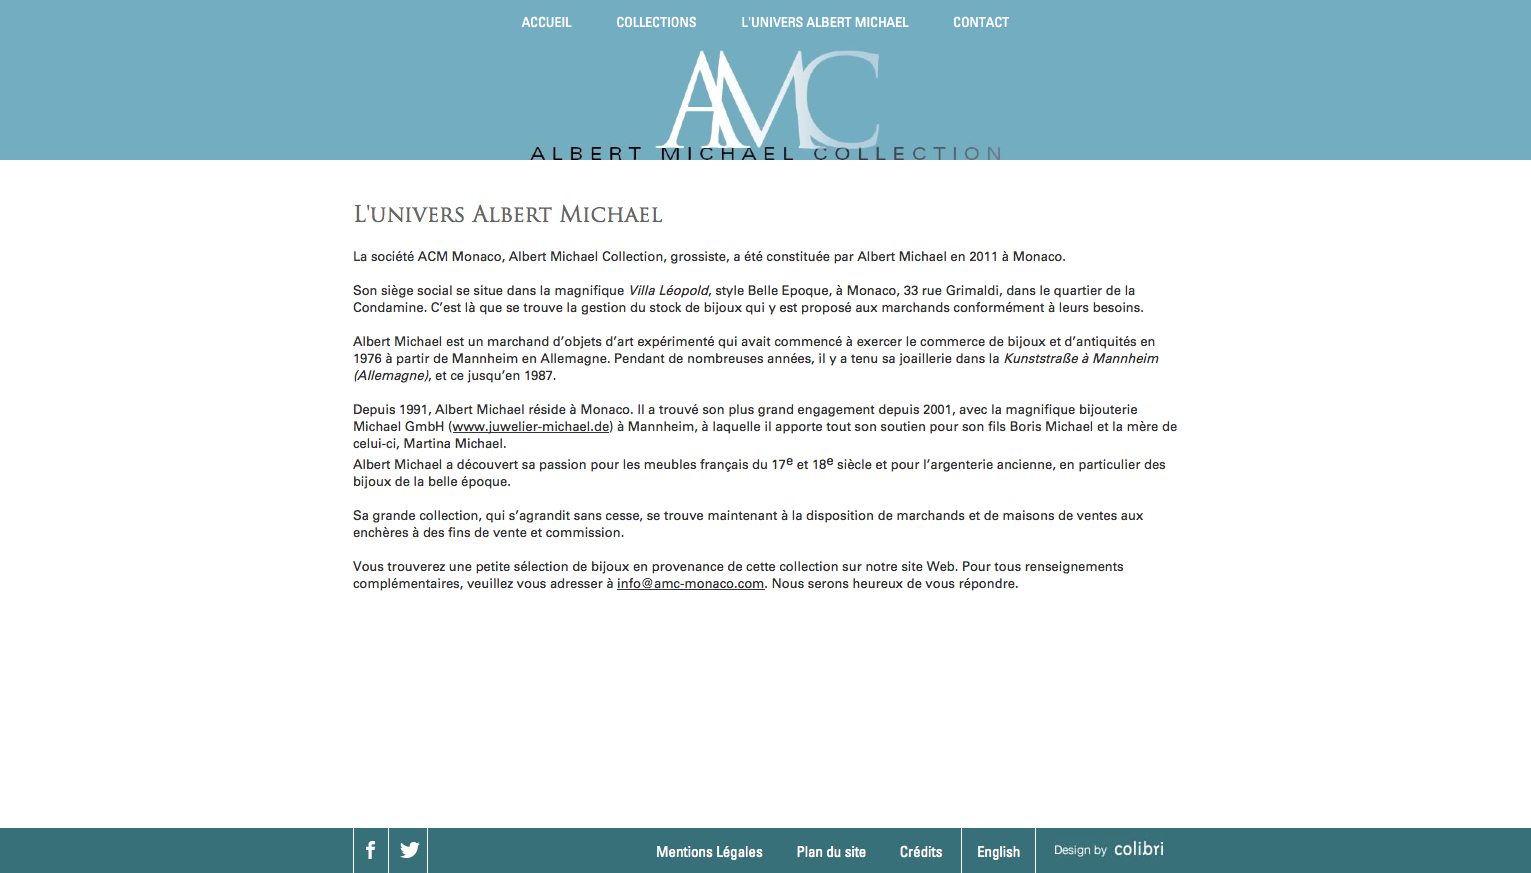 Albert michael collection - Albert Michael Collection - Agence - Refonte du site internet amc-monaco.com - 1